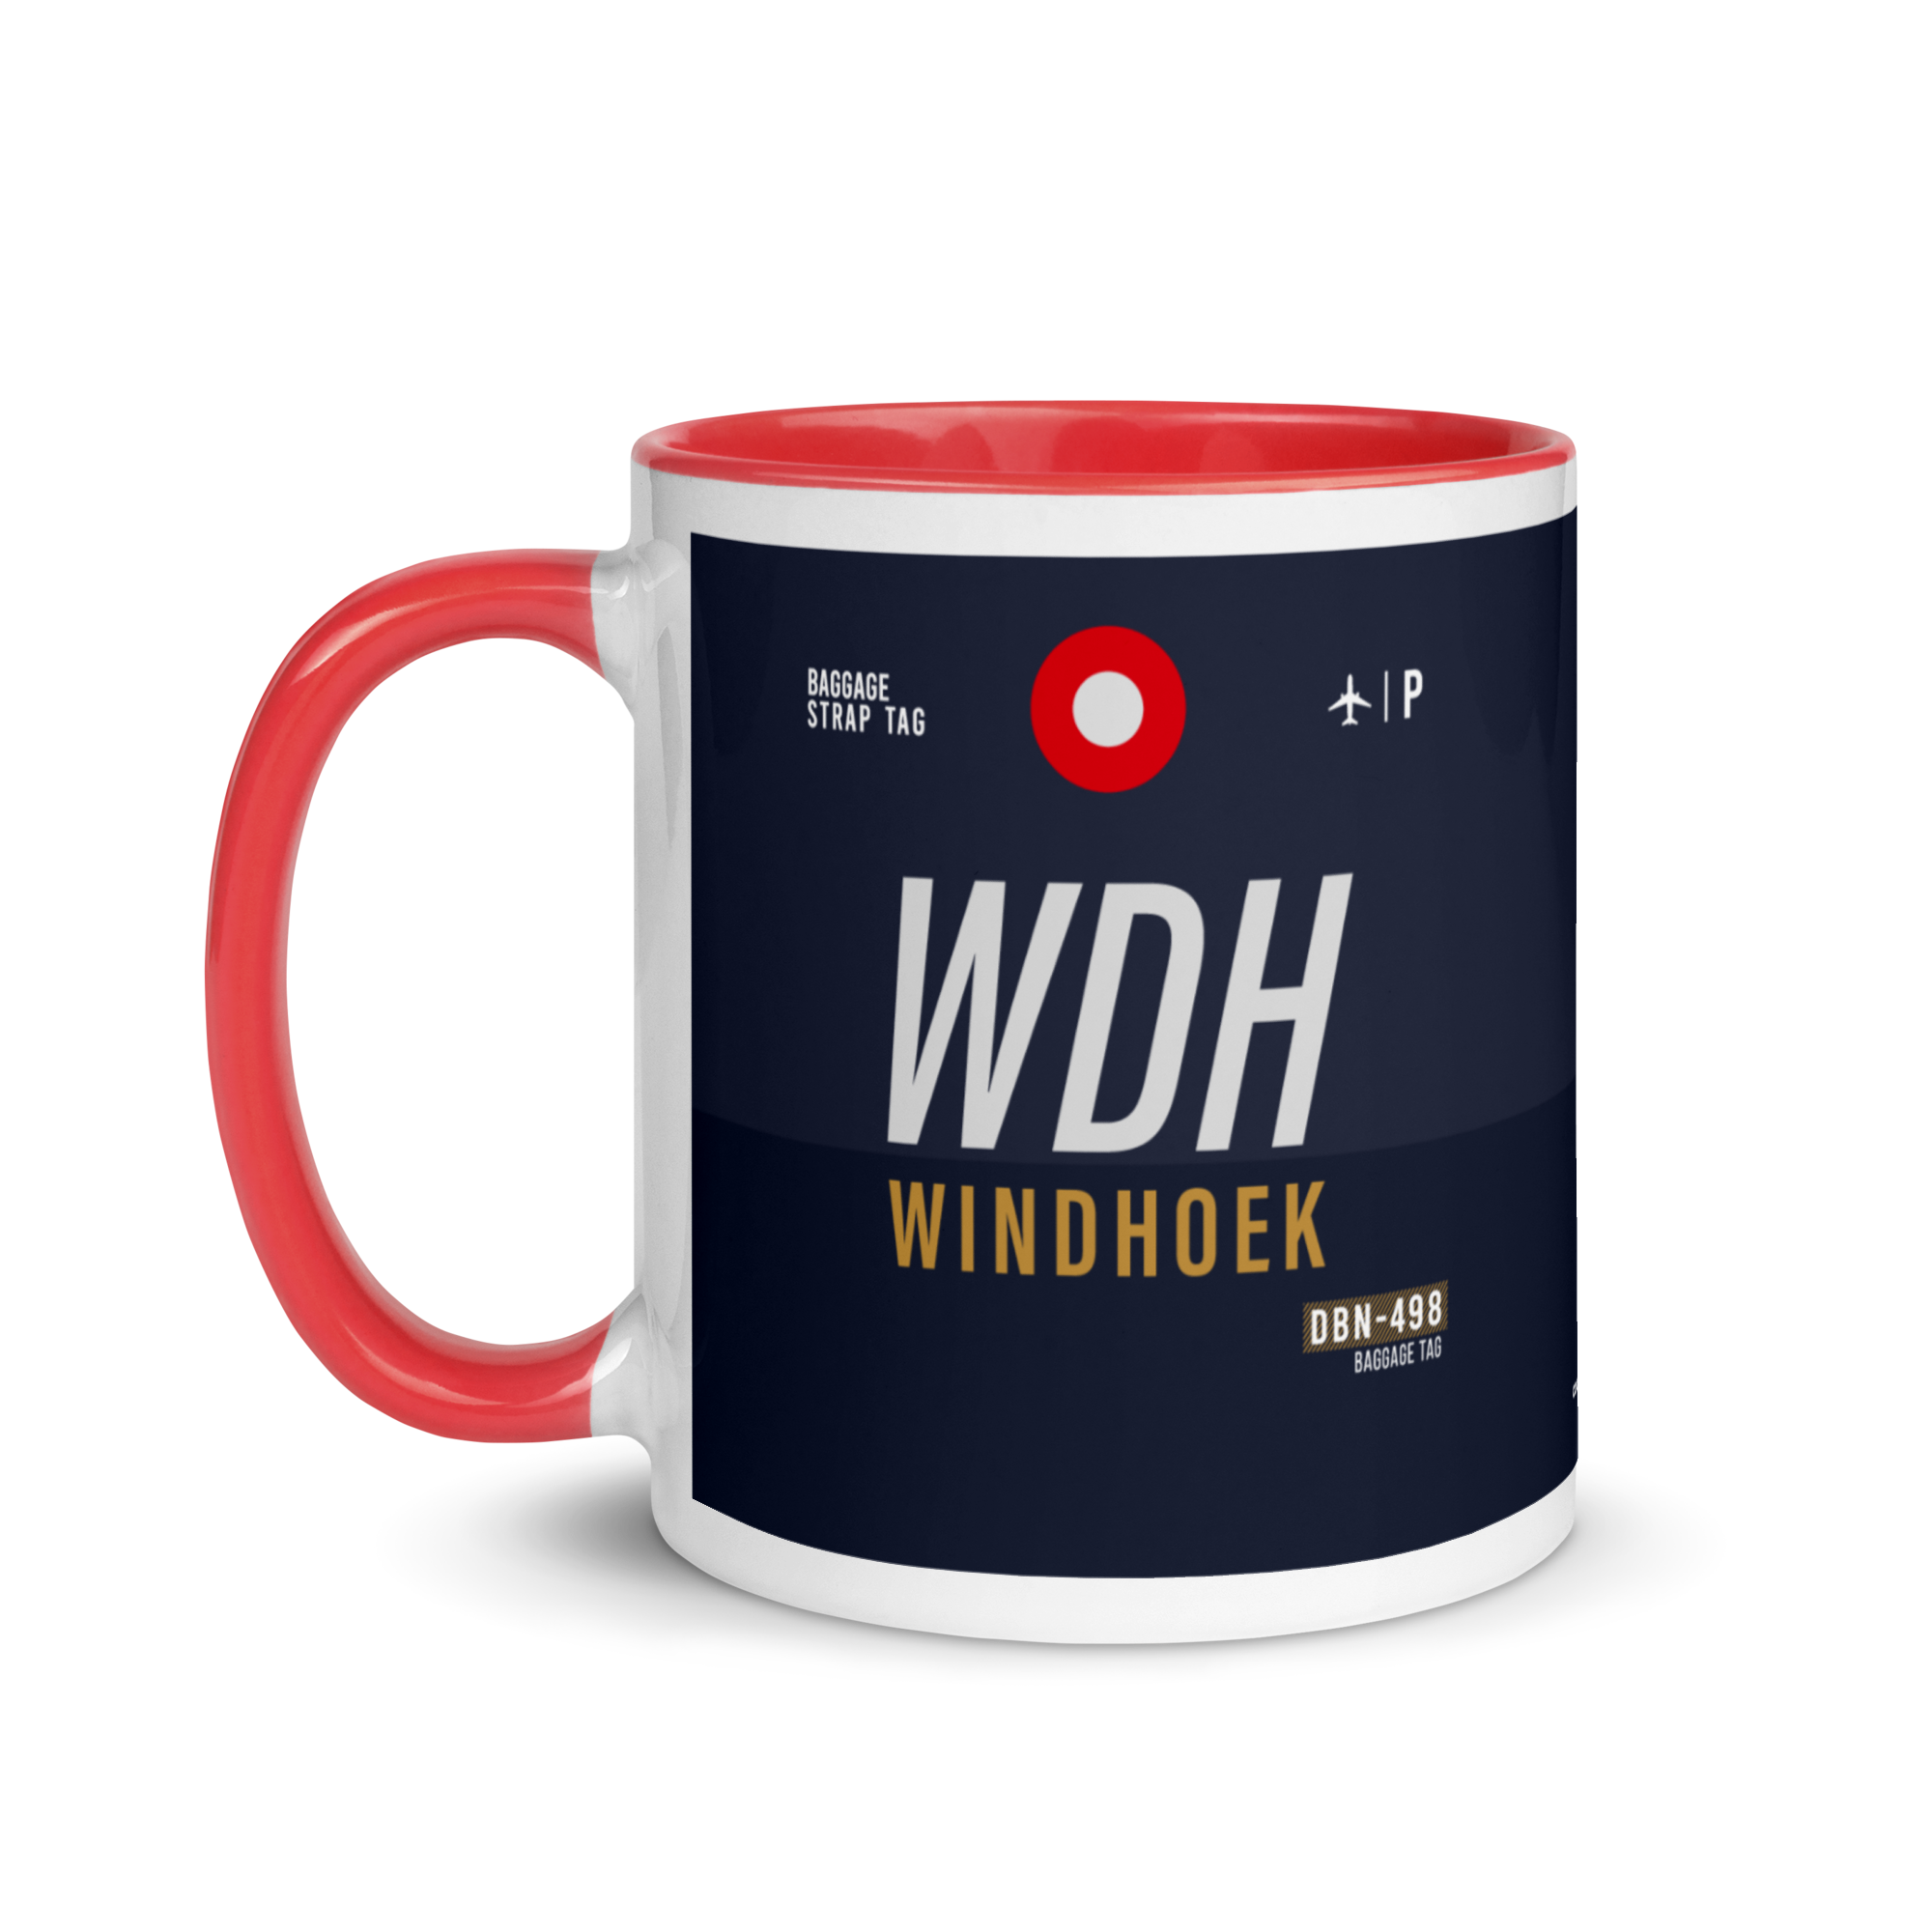 WDH - Windhoek Flughafencode Tasse mit farbiger Innenseite